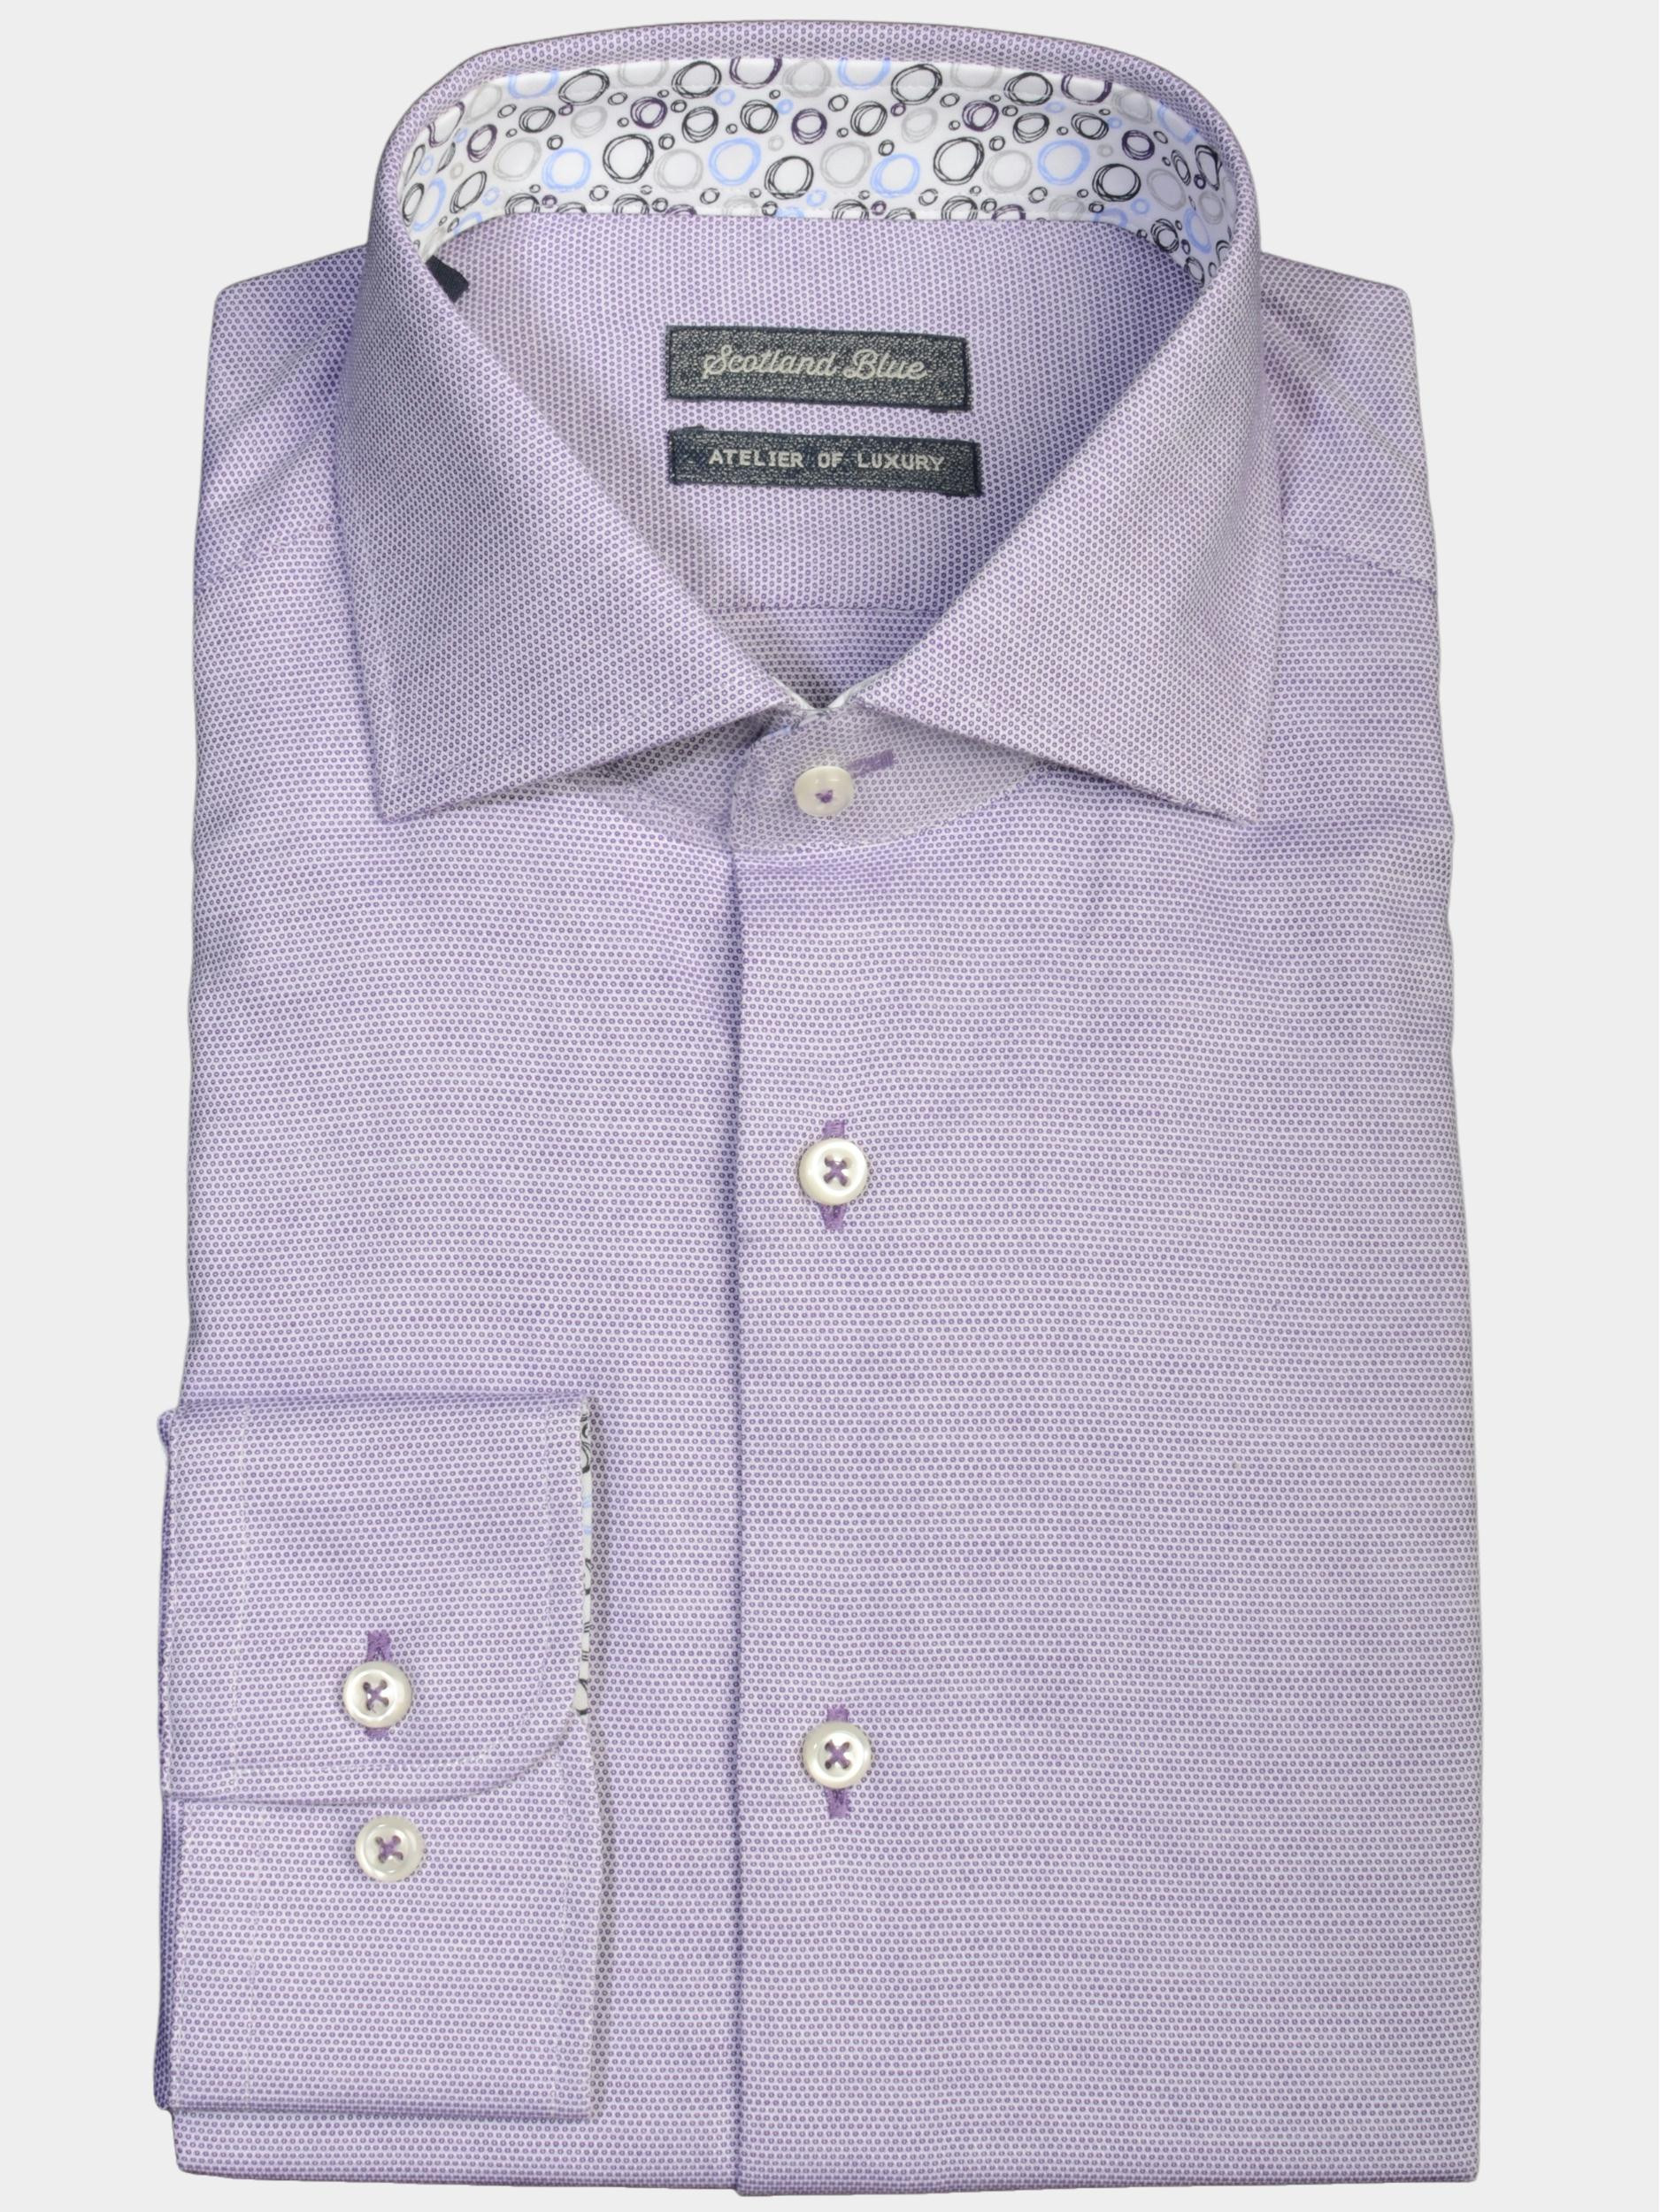 Afbeelding van Bos Bright Blue Scotland blue business hemd lange mouw wesley long sleeve dressual s 19106we16sb/770 purple